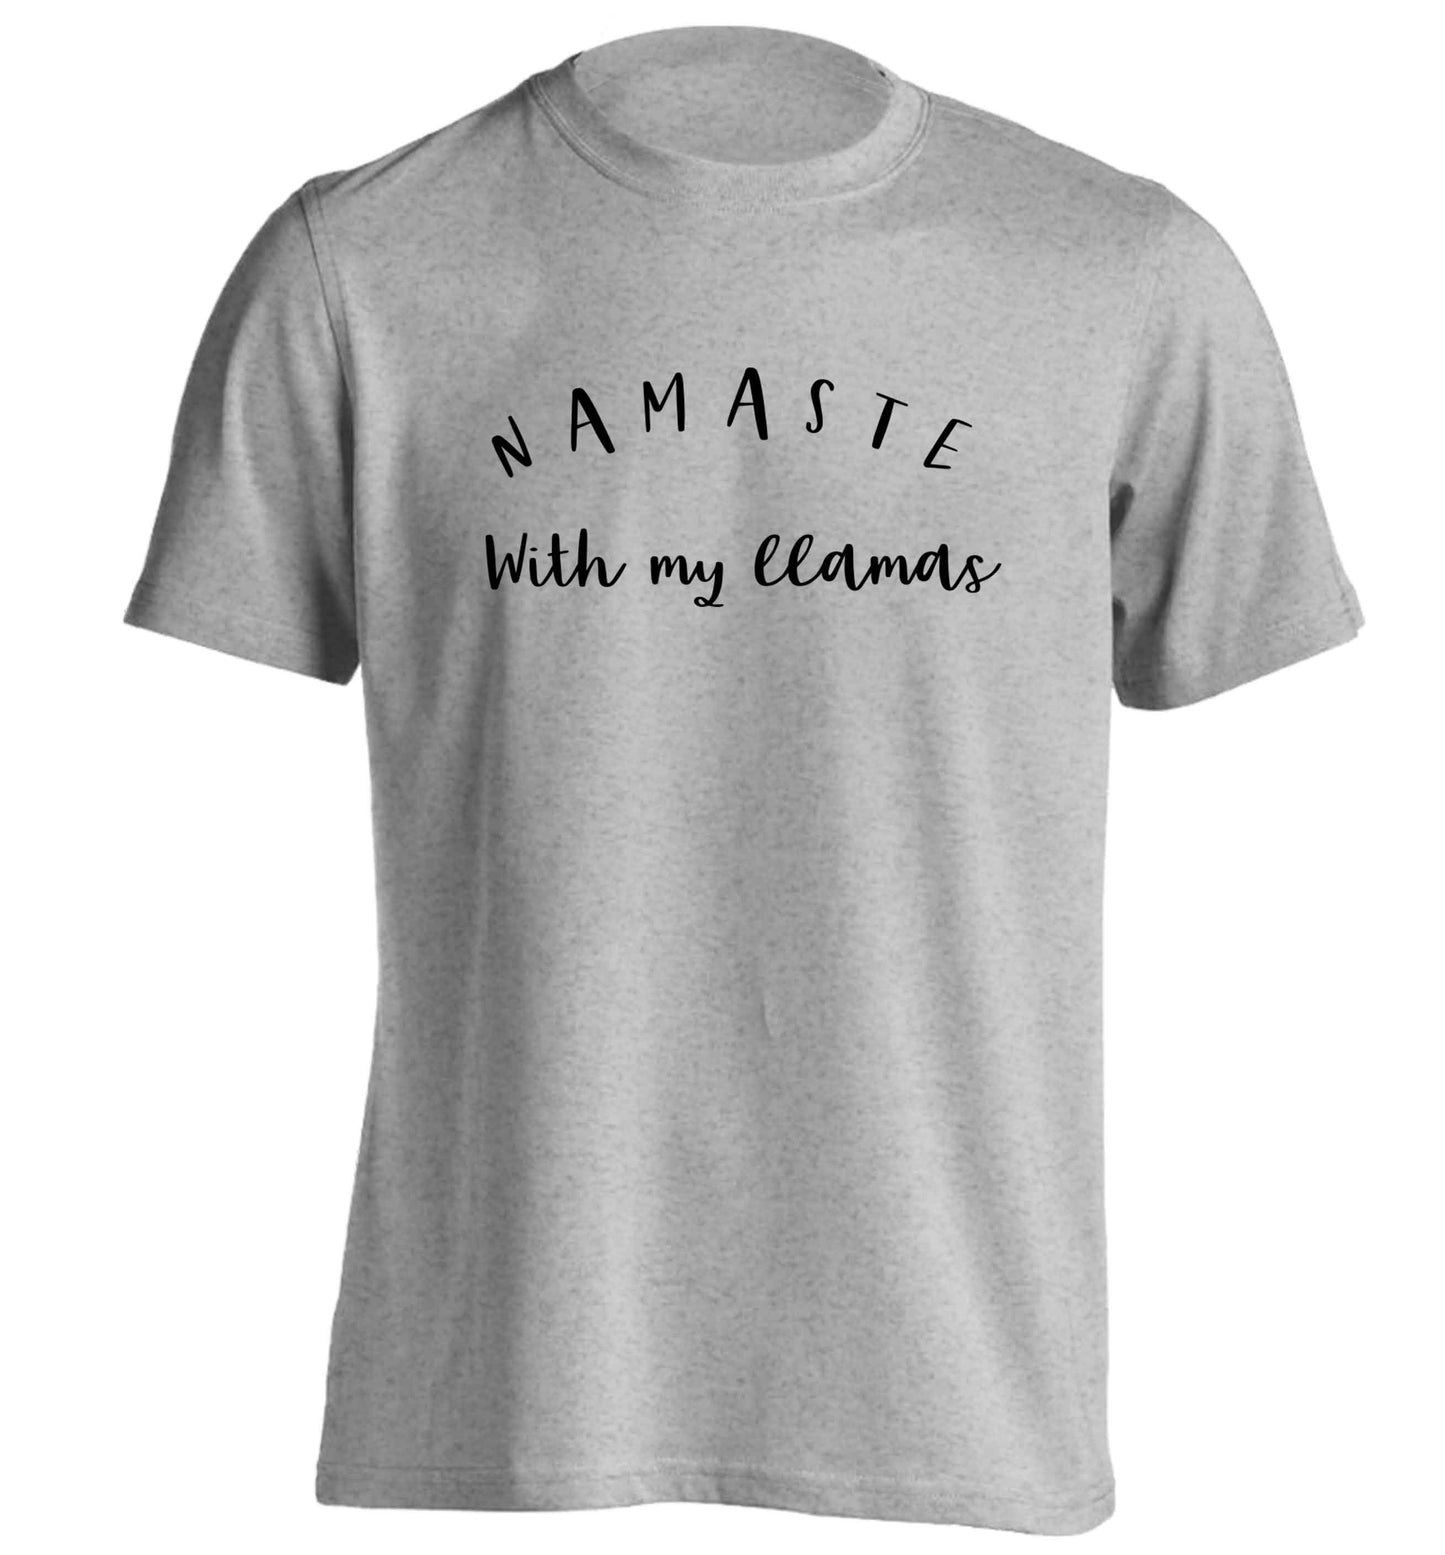 Namaste with my llamas adults unisex grey Tshirt 2XL